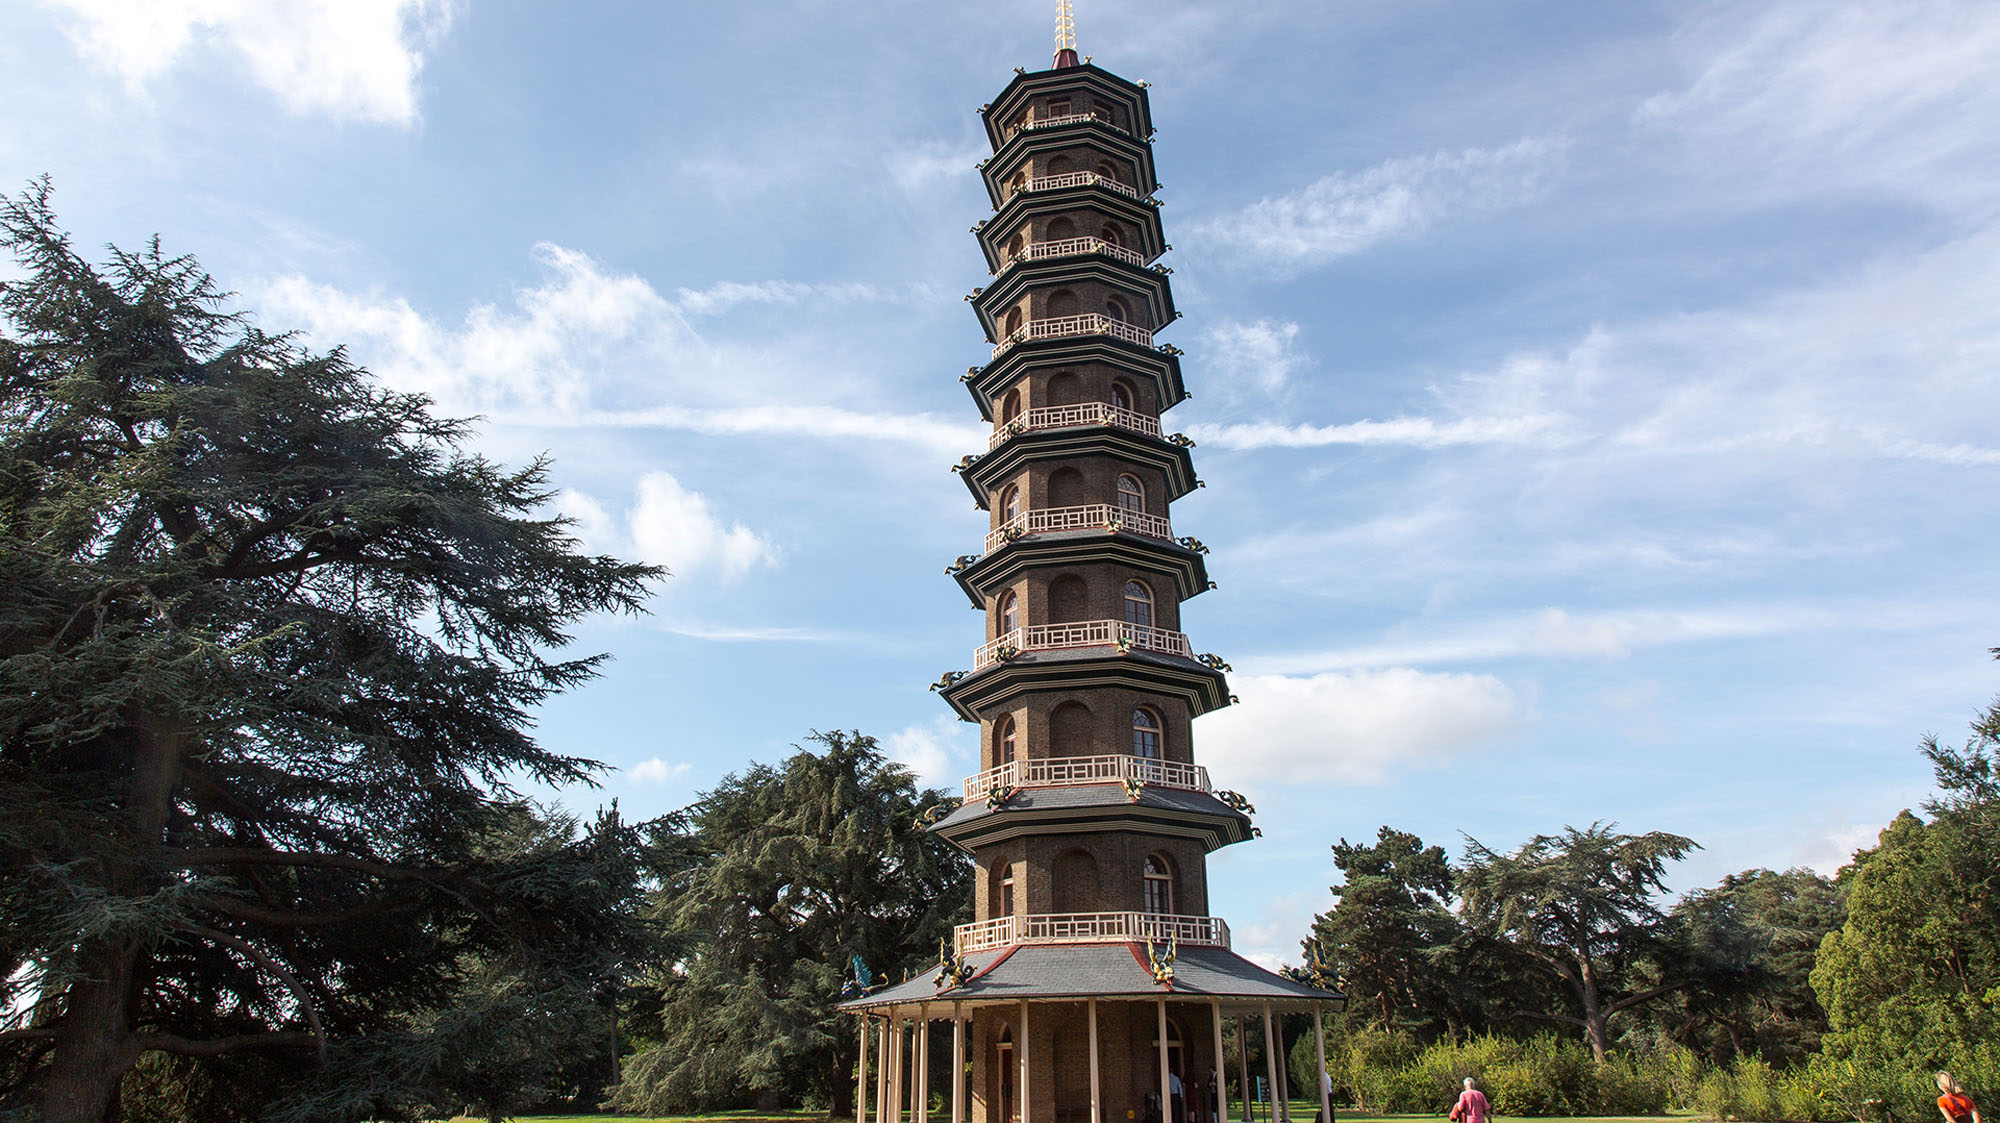 The Great Pagoda at Kew